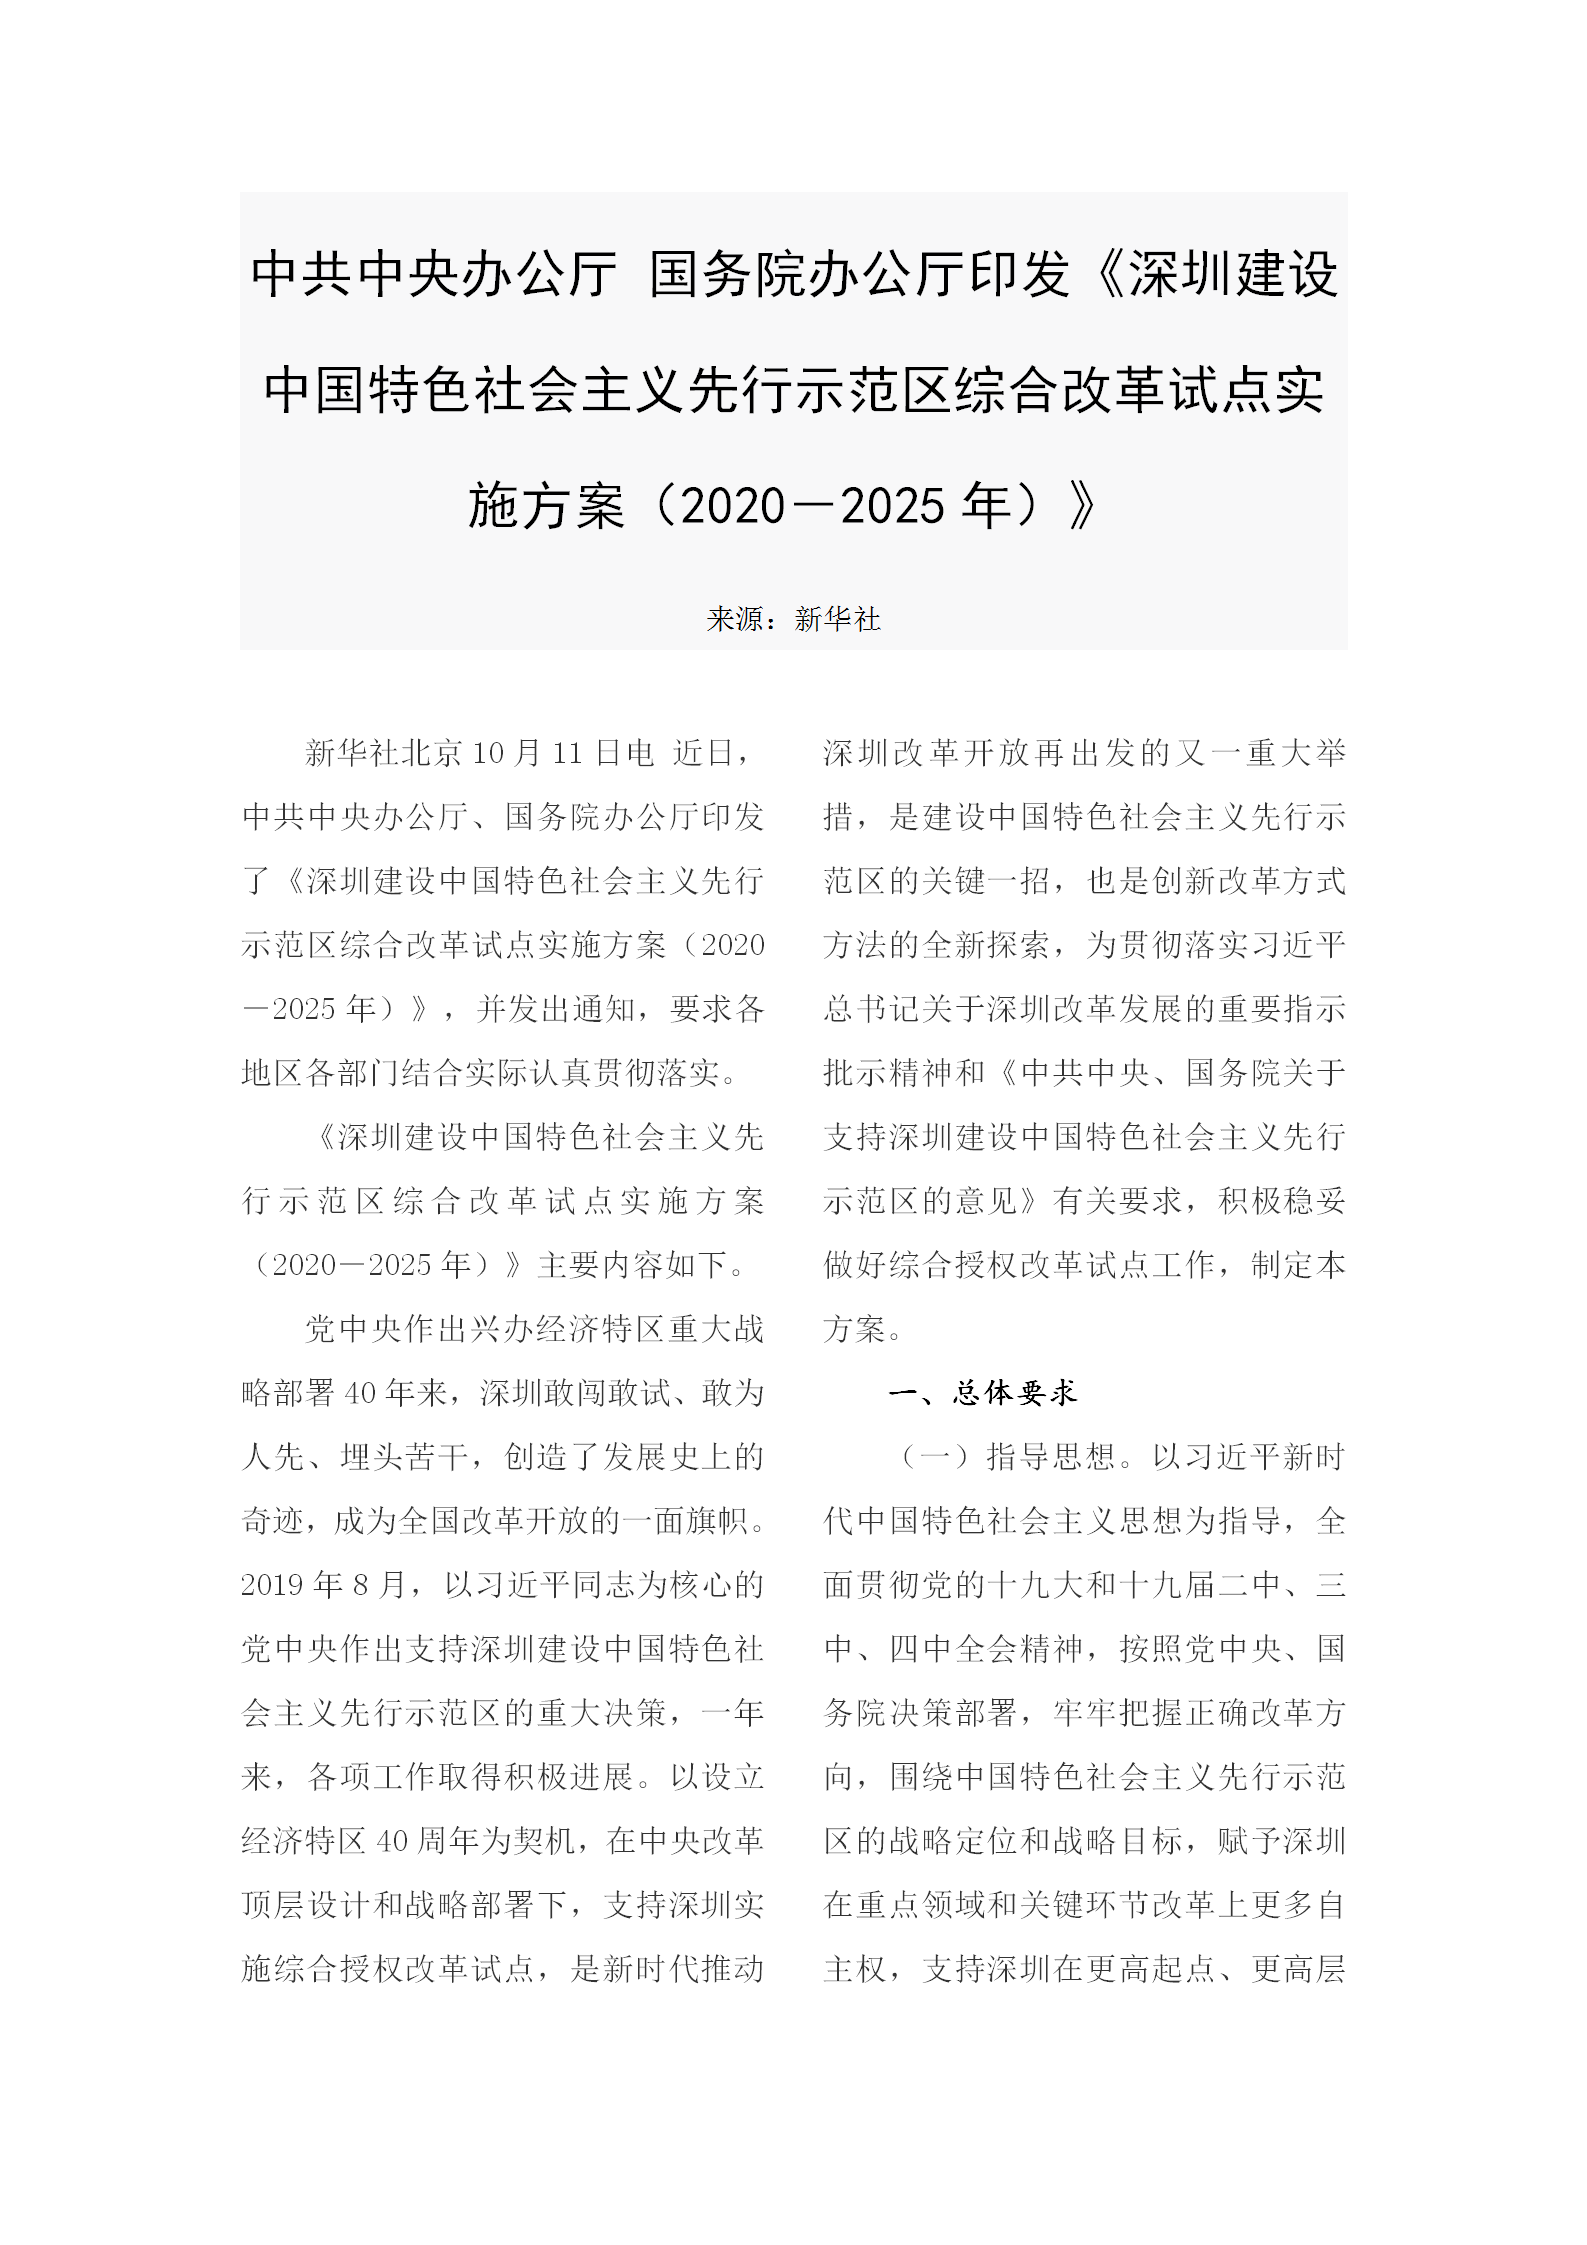 1-5 深圳建设中国特色社会主义先行示范区综合改革试点实施方案_01.png